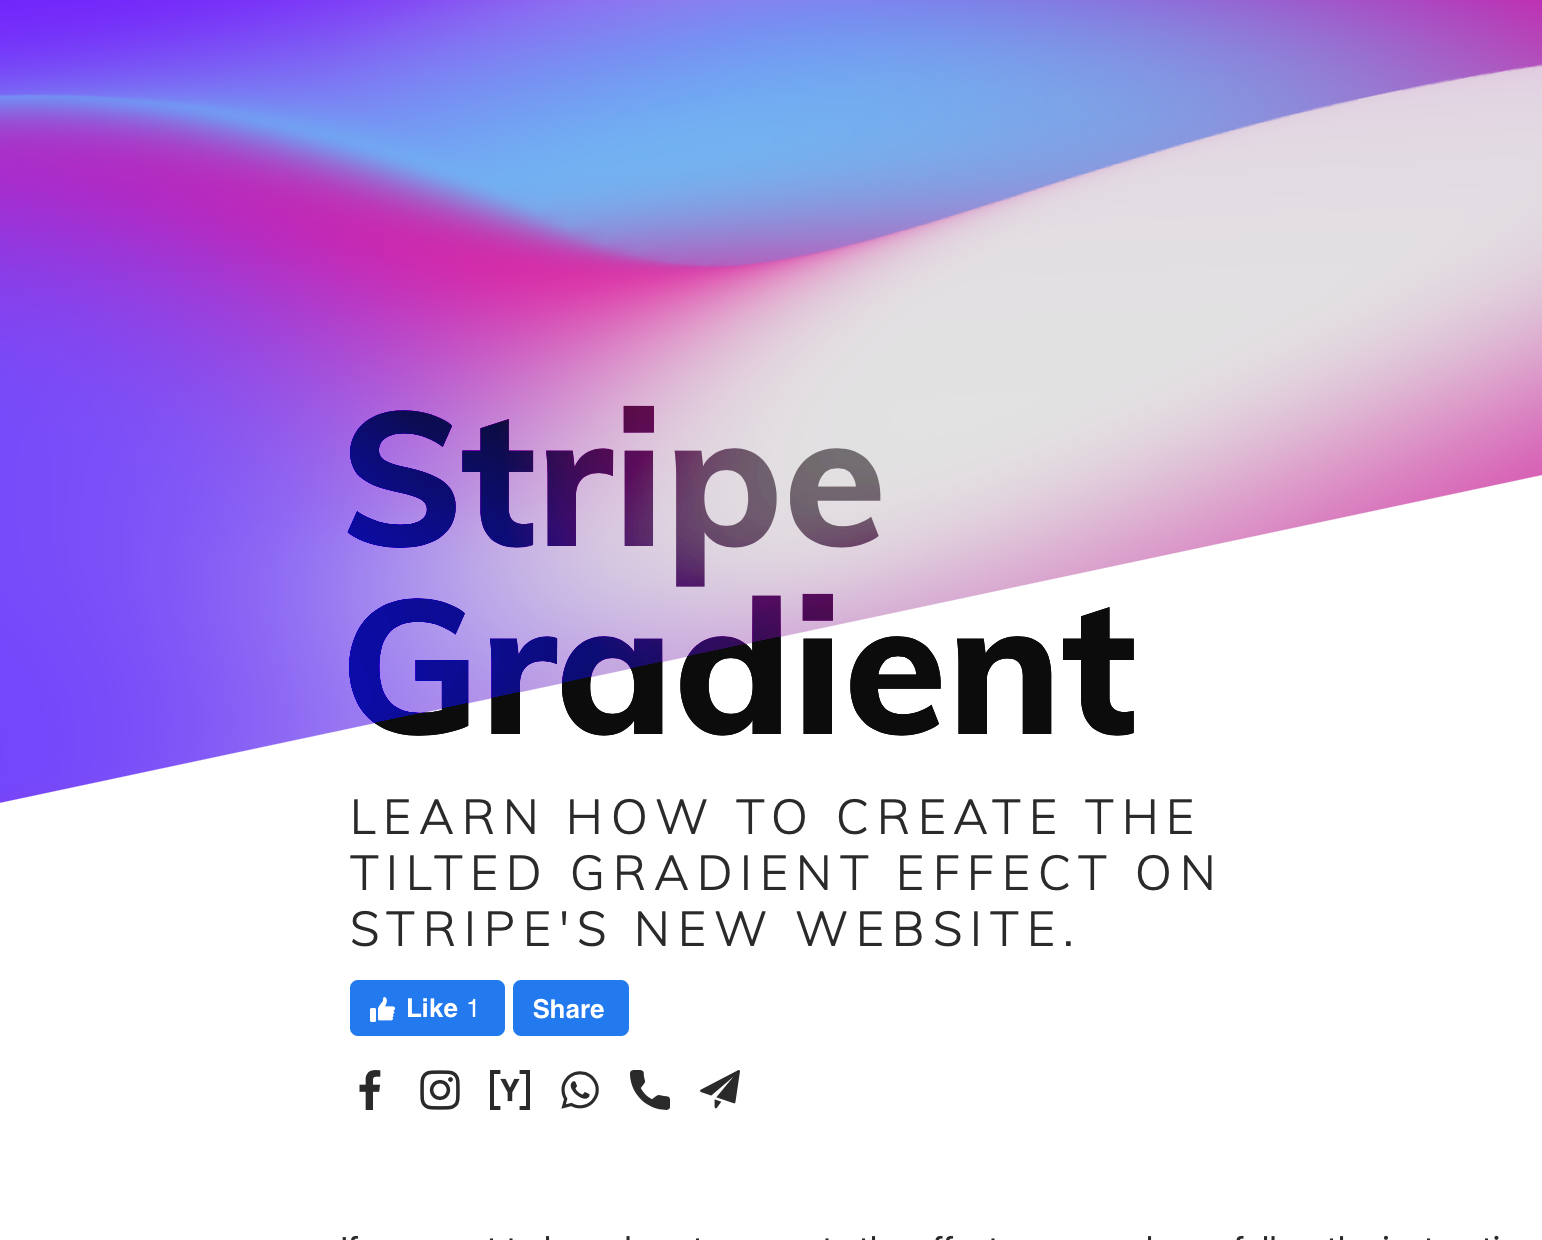 Hiệu ứng gradient dạng sọc trang web: Bạn muốn trở nên chuyên nghiệp hơn trong việc thiết kế trang web? Hãy xem hình ảnh về hiệu ứng gradient dạng sọc trên trang web, đây là một cách thú vị để tạo nên sự khác biệt và thu hút khách hàng đến với trang web của bạn.